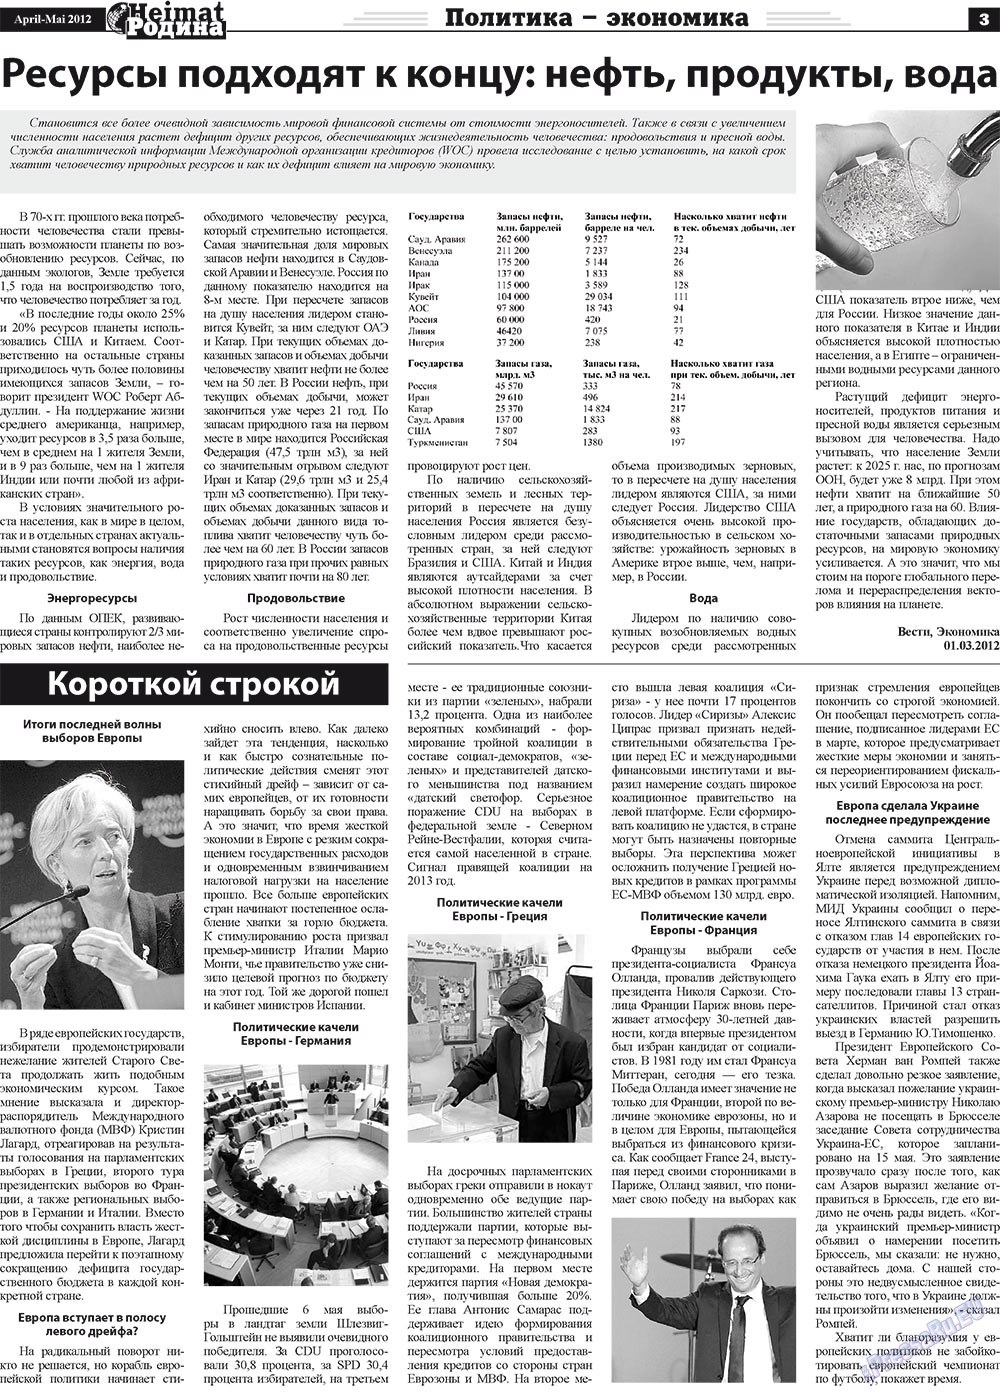 Heimat-Родина (газета). 2012 год, номер 4, стр. 3